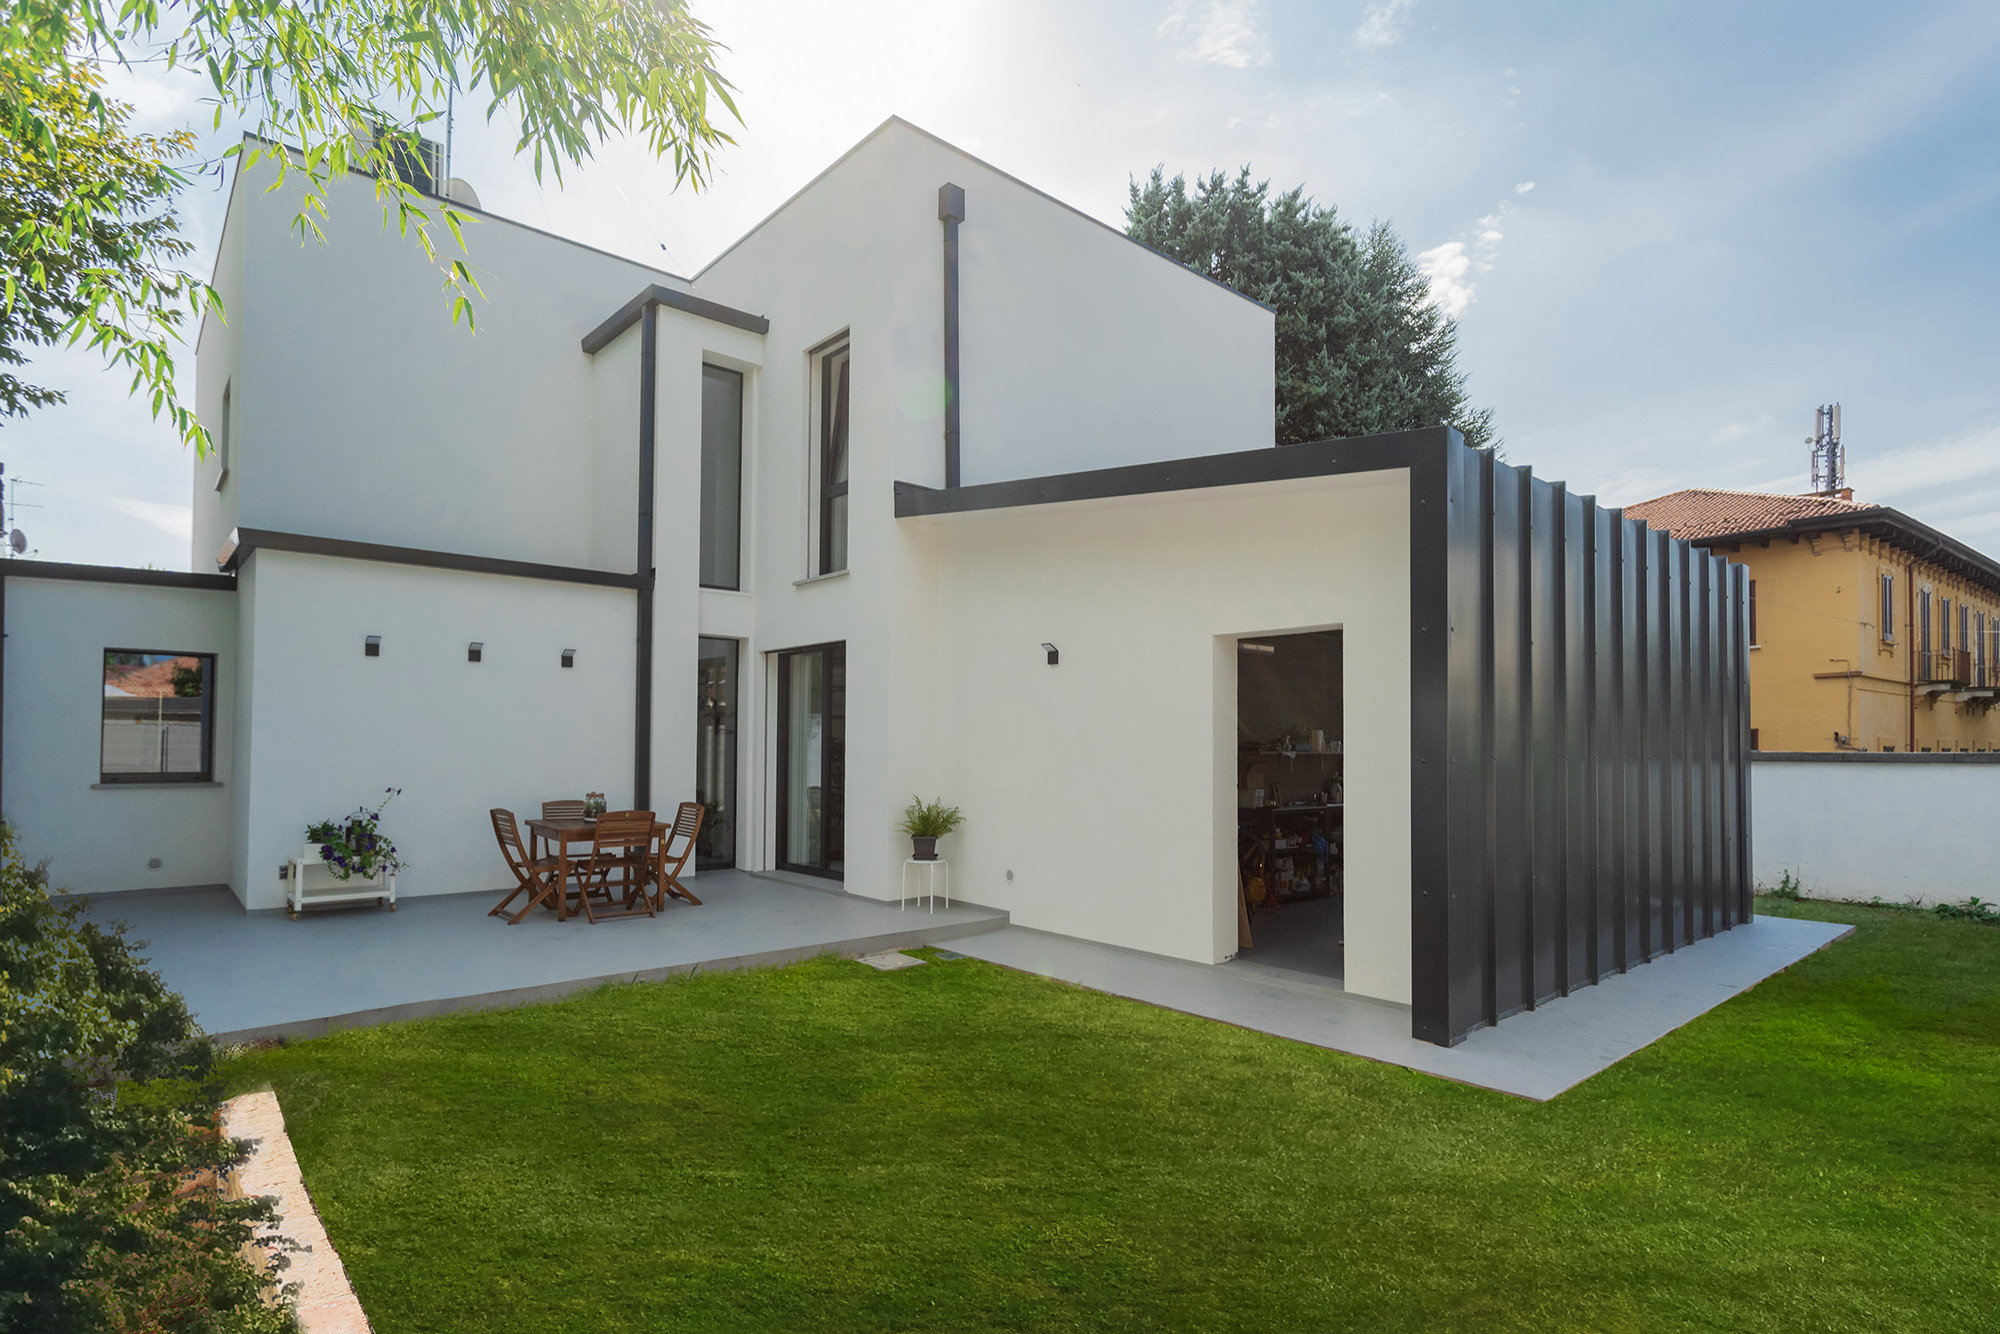 Immagine della villa bianca contemporanea a due piani di medie dimensioni con rivestimenti misti, tetto piano, copertura in metallo o lamiera e tetto grigio